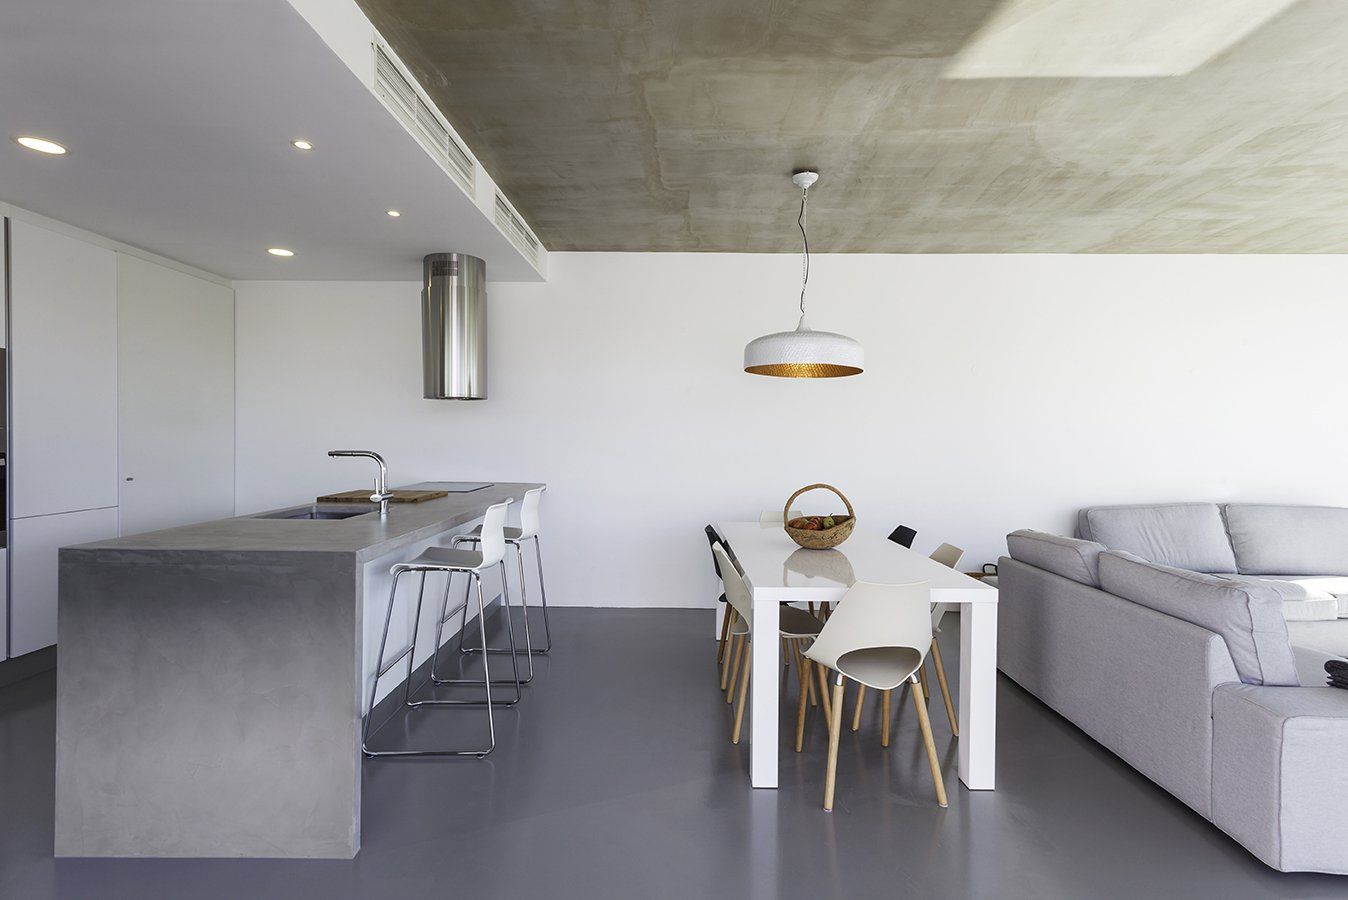 Modern kitchen with white furniture